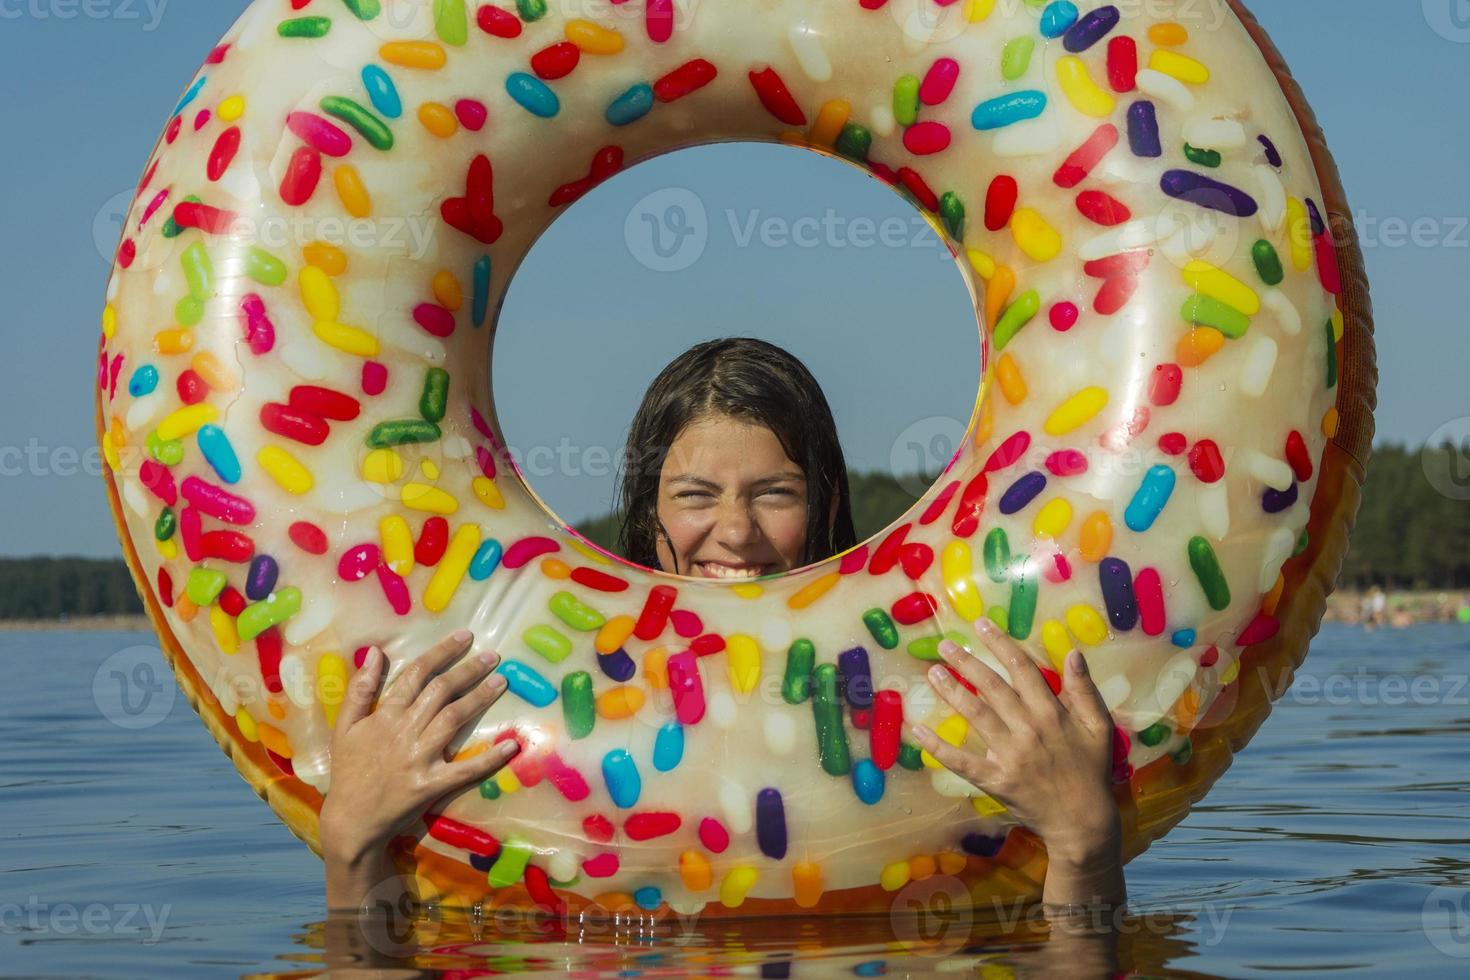 jolie adolescente avec un cercle de natation gonflable coloré nage dans l'eau bleue de la mer par une chaude journée ensoleillée photo